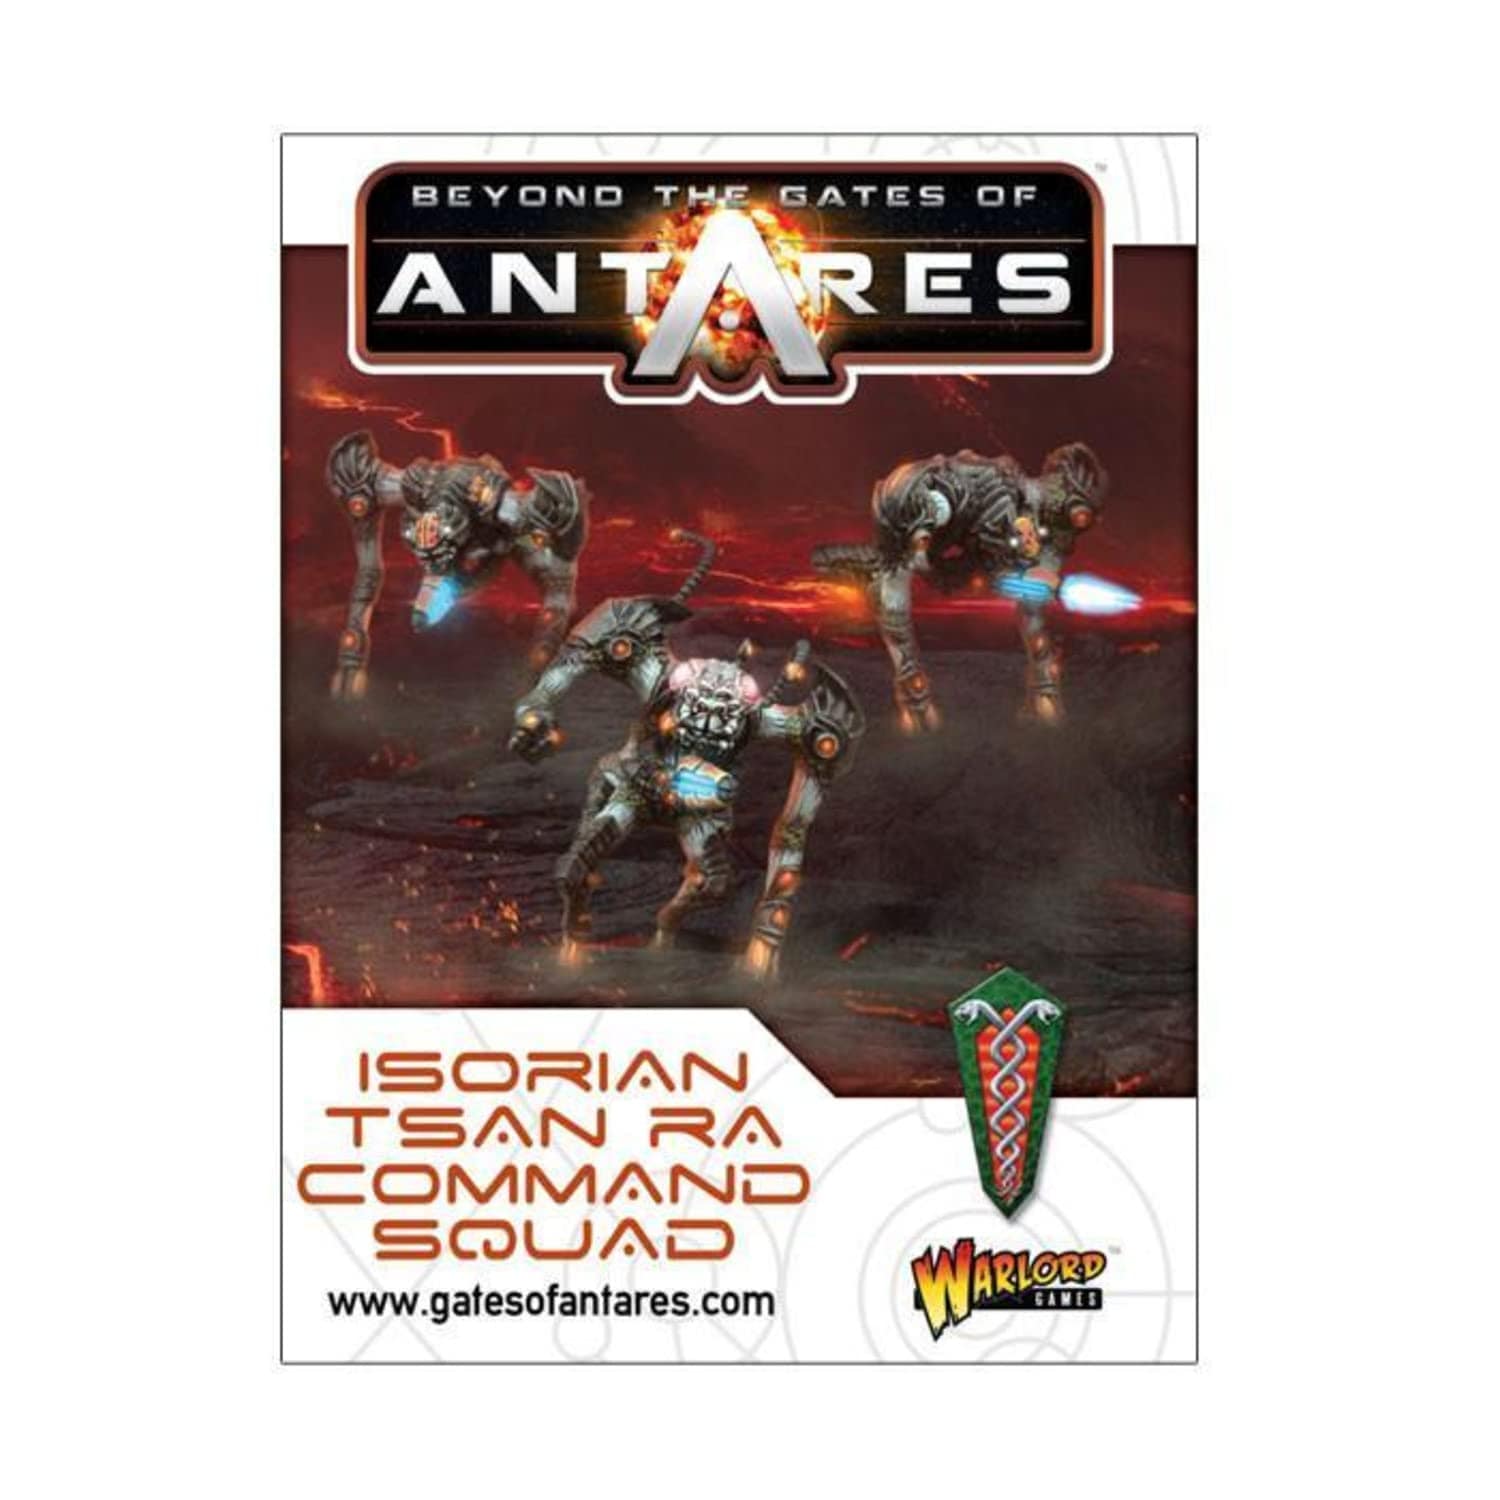 Warlord Games Miniatures Games Warlord Games Gates of Antares: Tsan Ra Command Squad